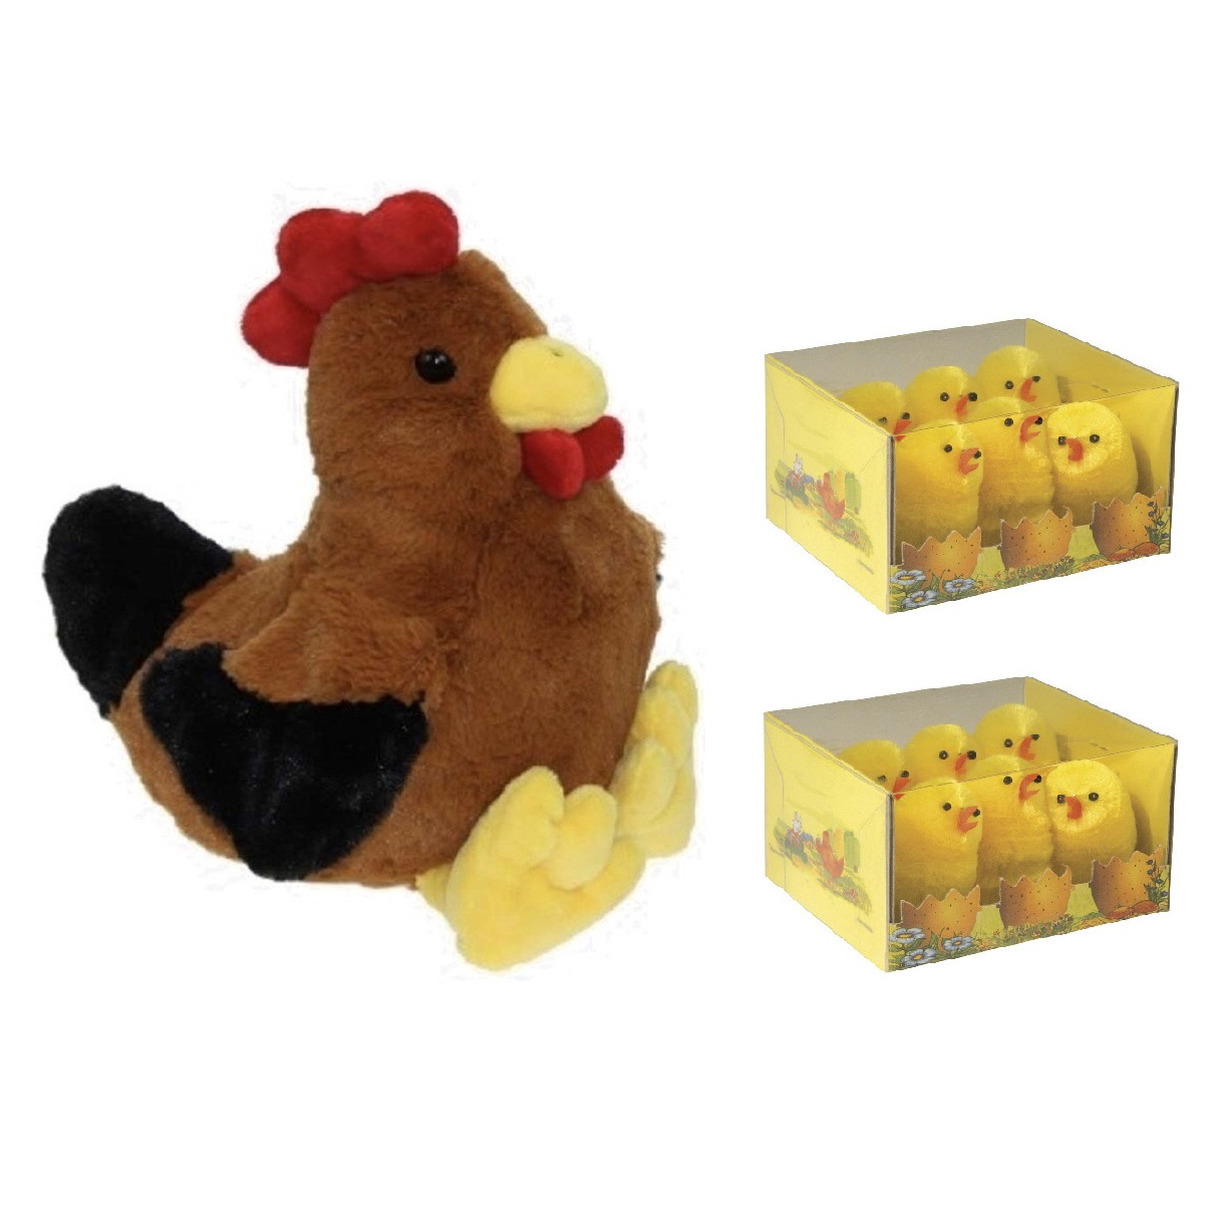 Pluche bruine kippen-hanen knuffel van 25 cm met 12x stuks mini kuikentjes 5 cm